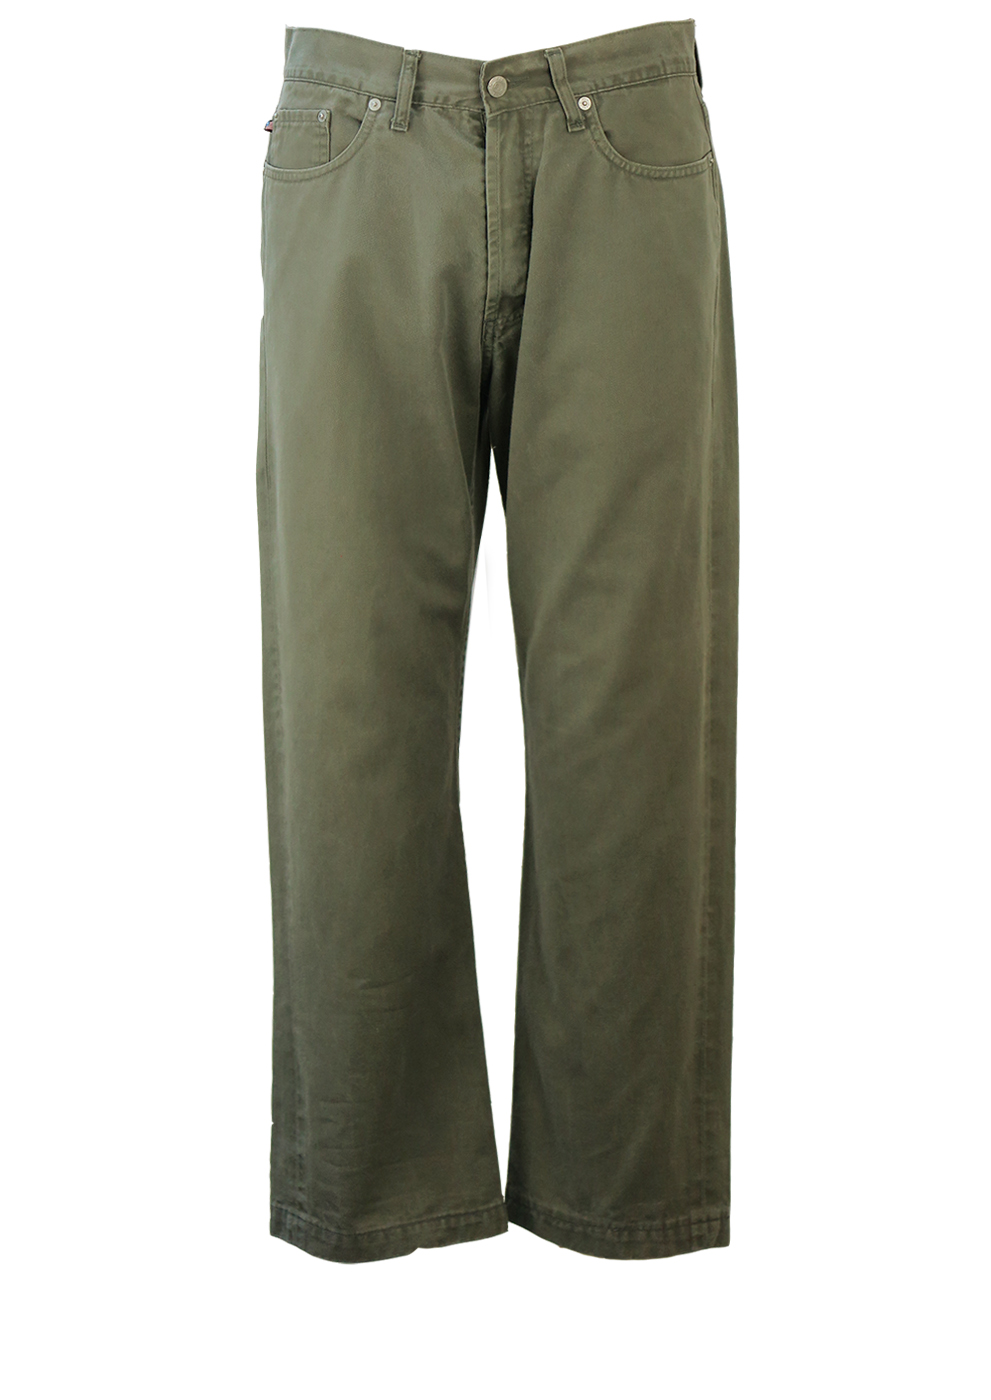 Polo Ralph Lauren Khaki Green Jeans - 33 | Reign Vintage